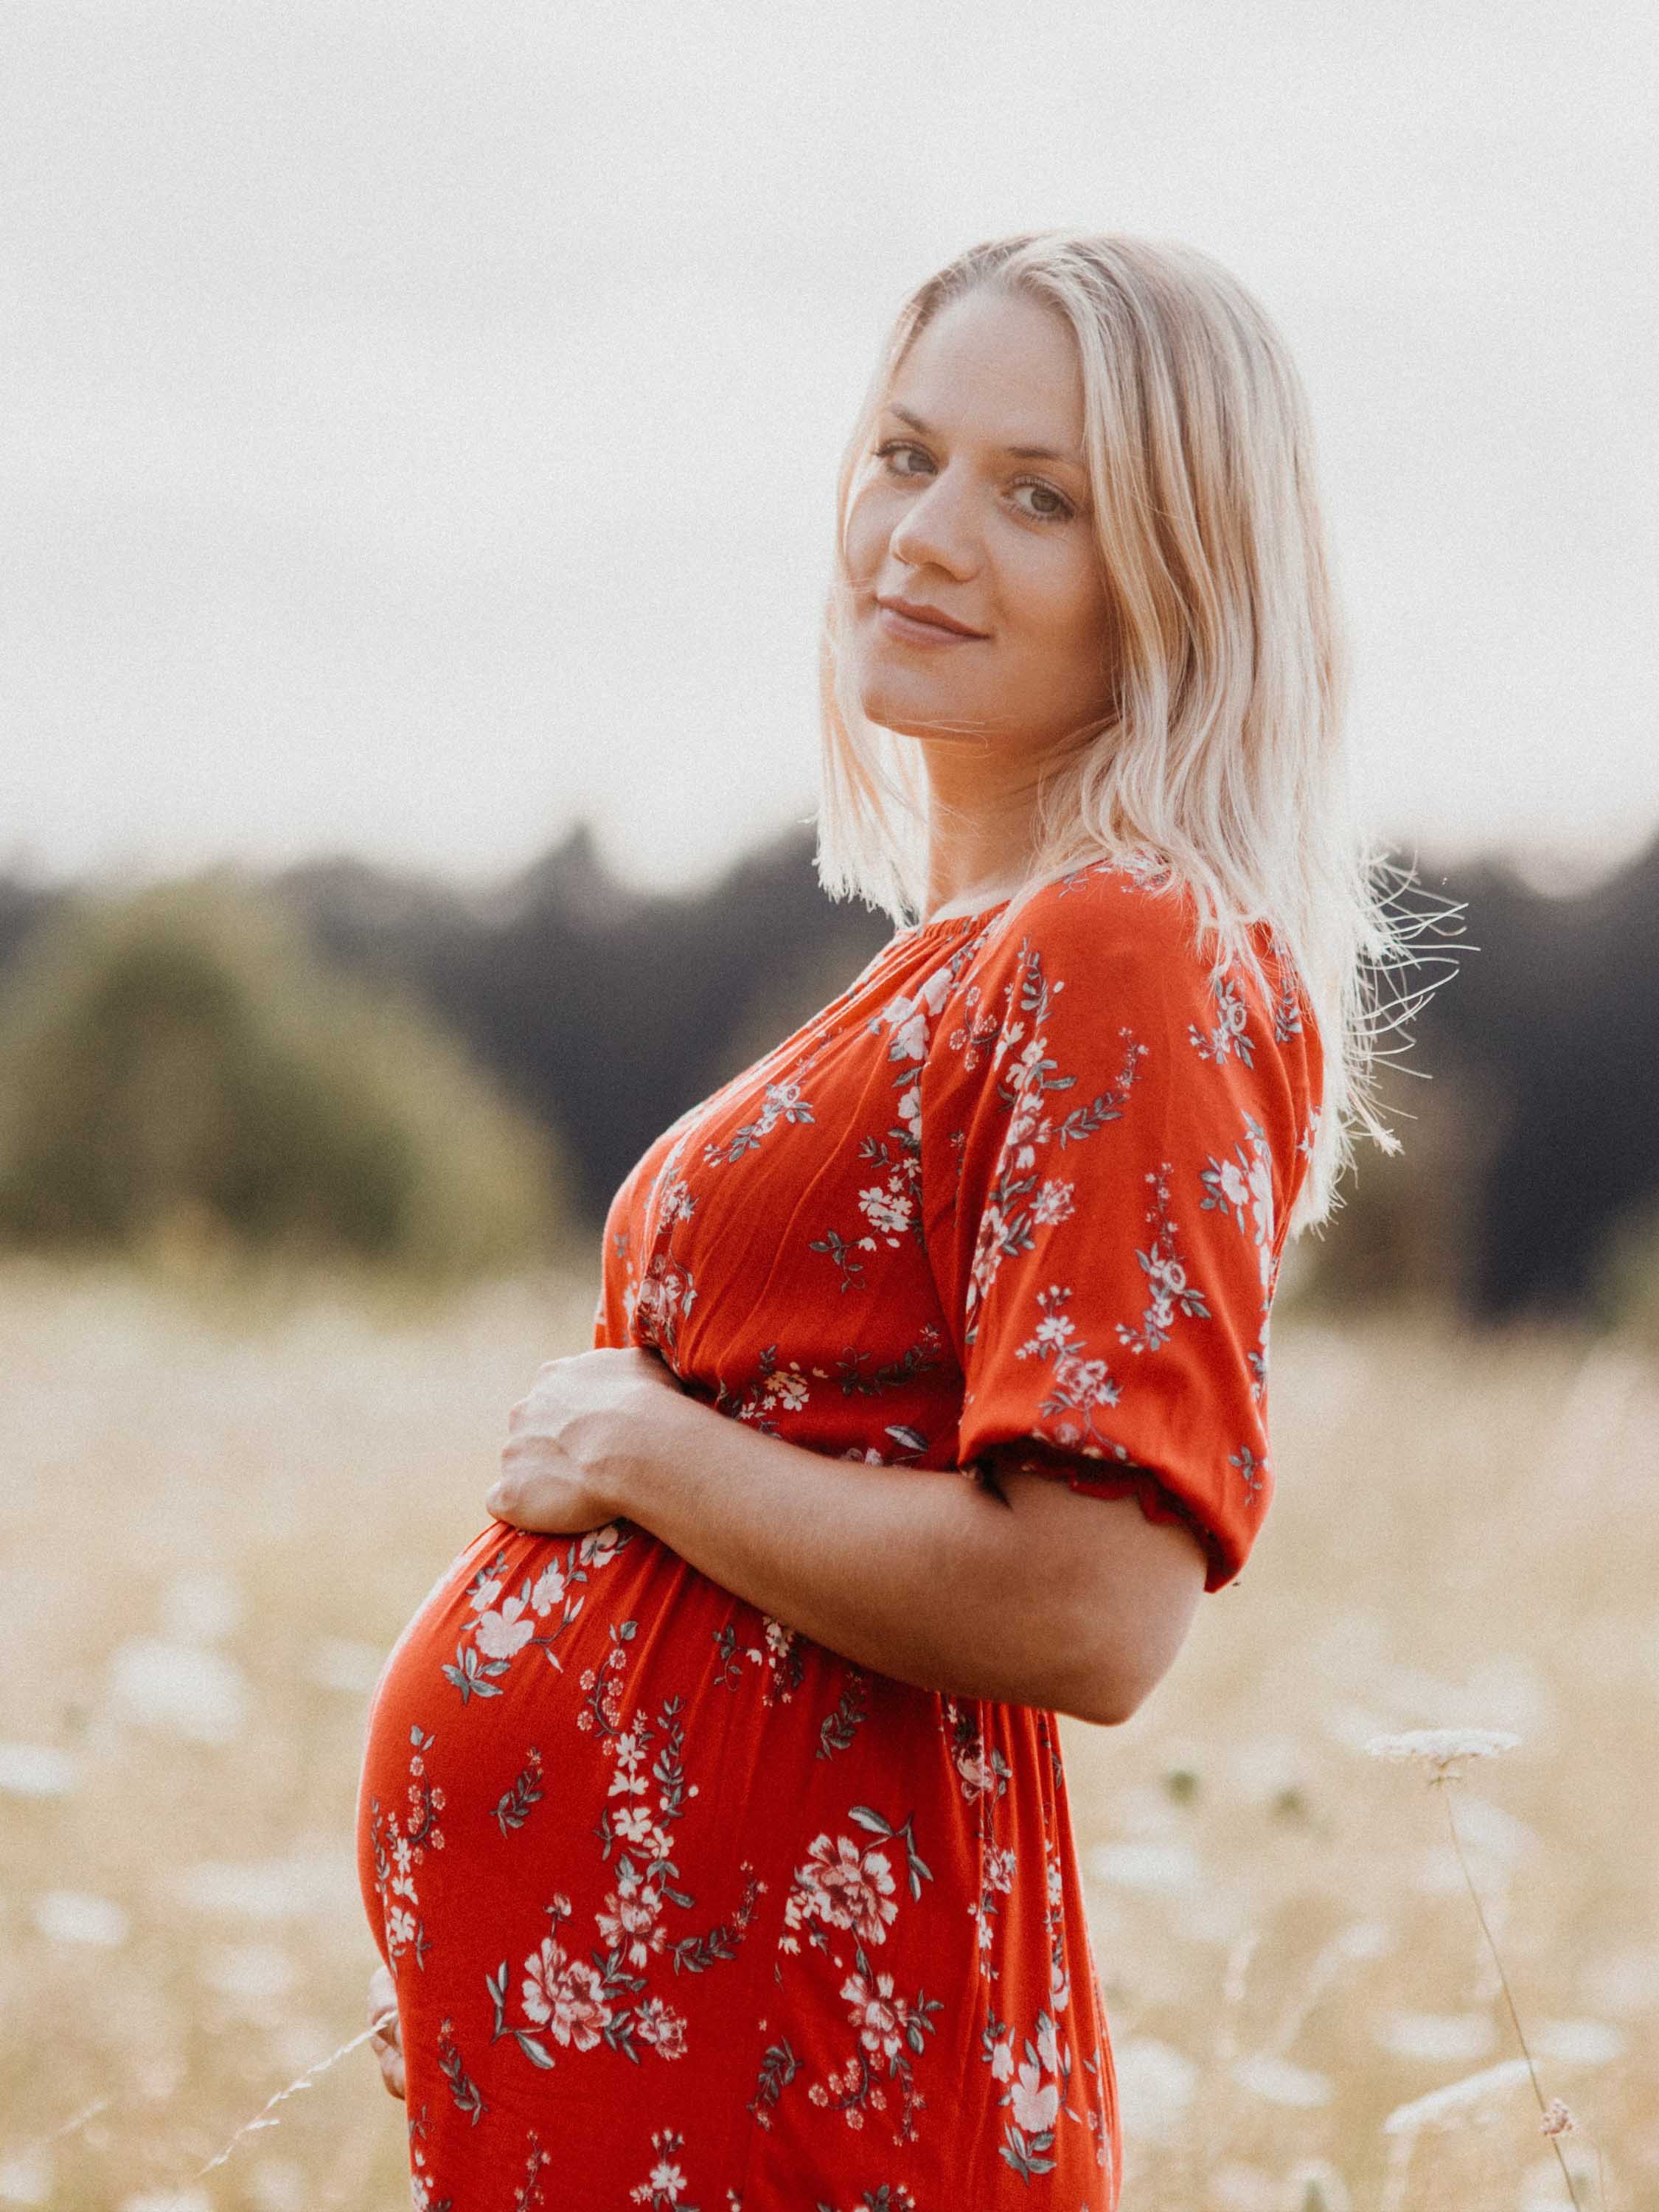 Schwangere Frau schaut glücklich in die Kamera - Momente des Schenkens | Emotionsbild